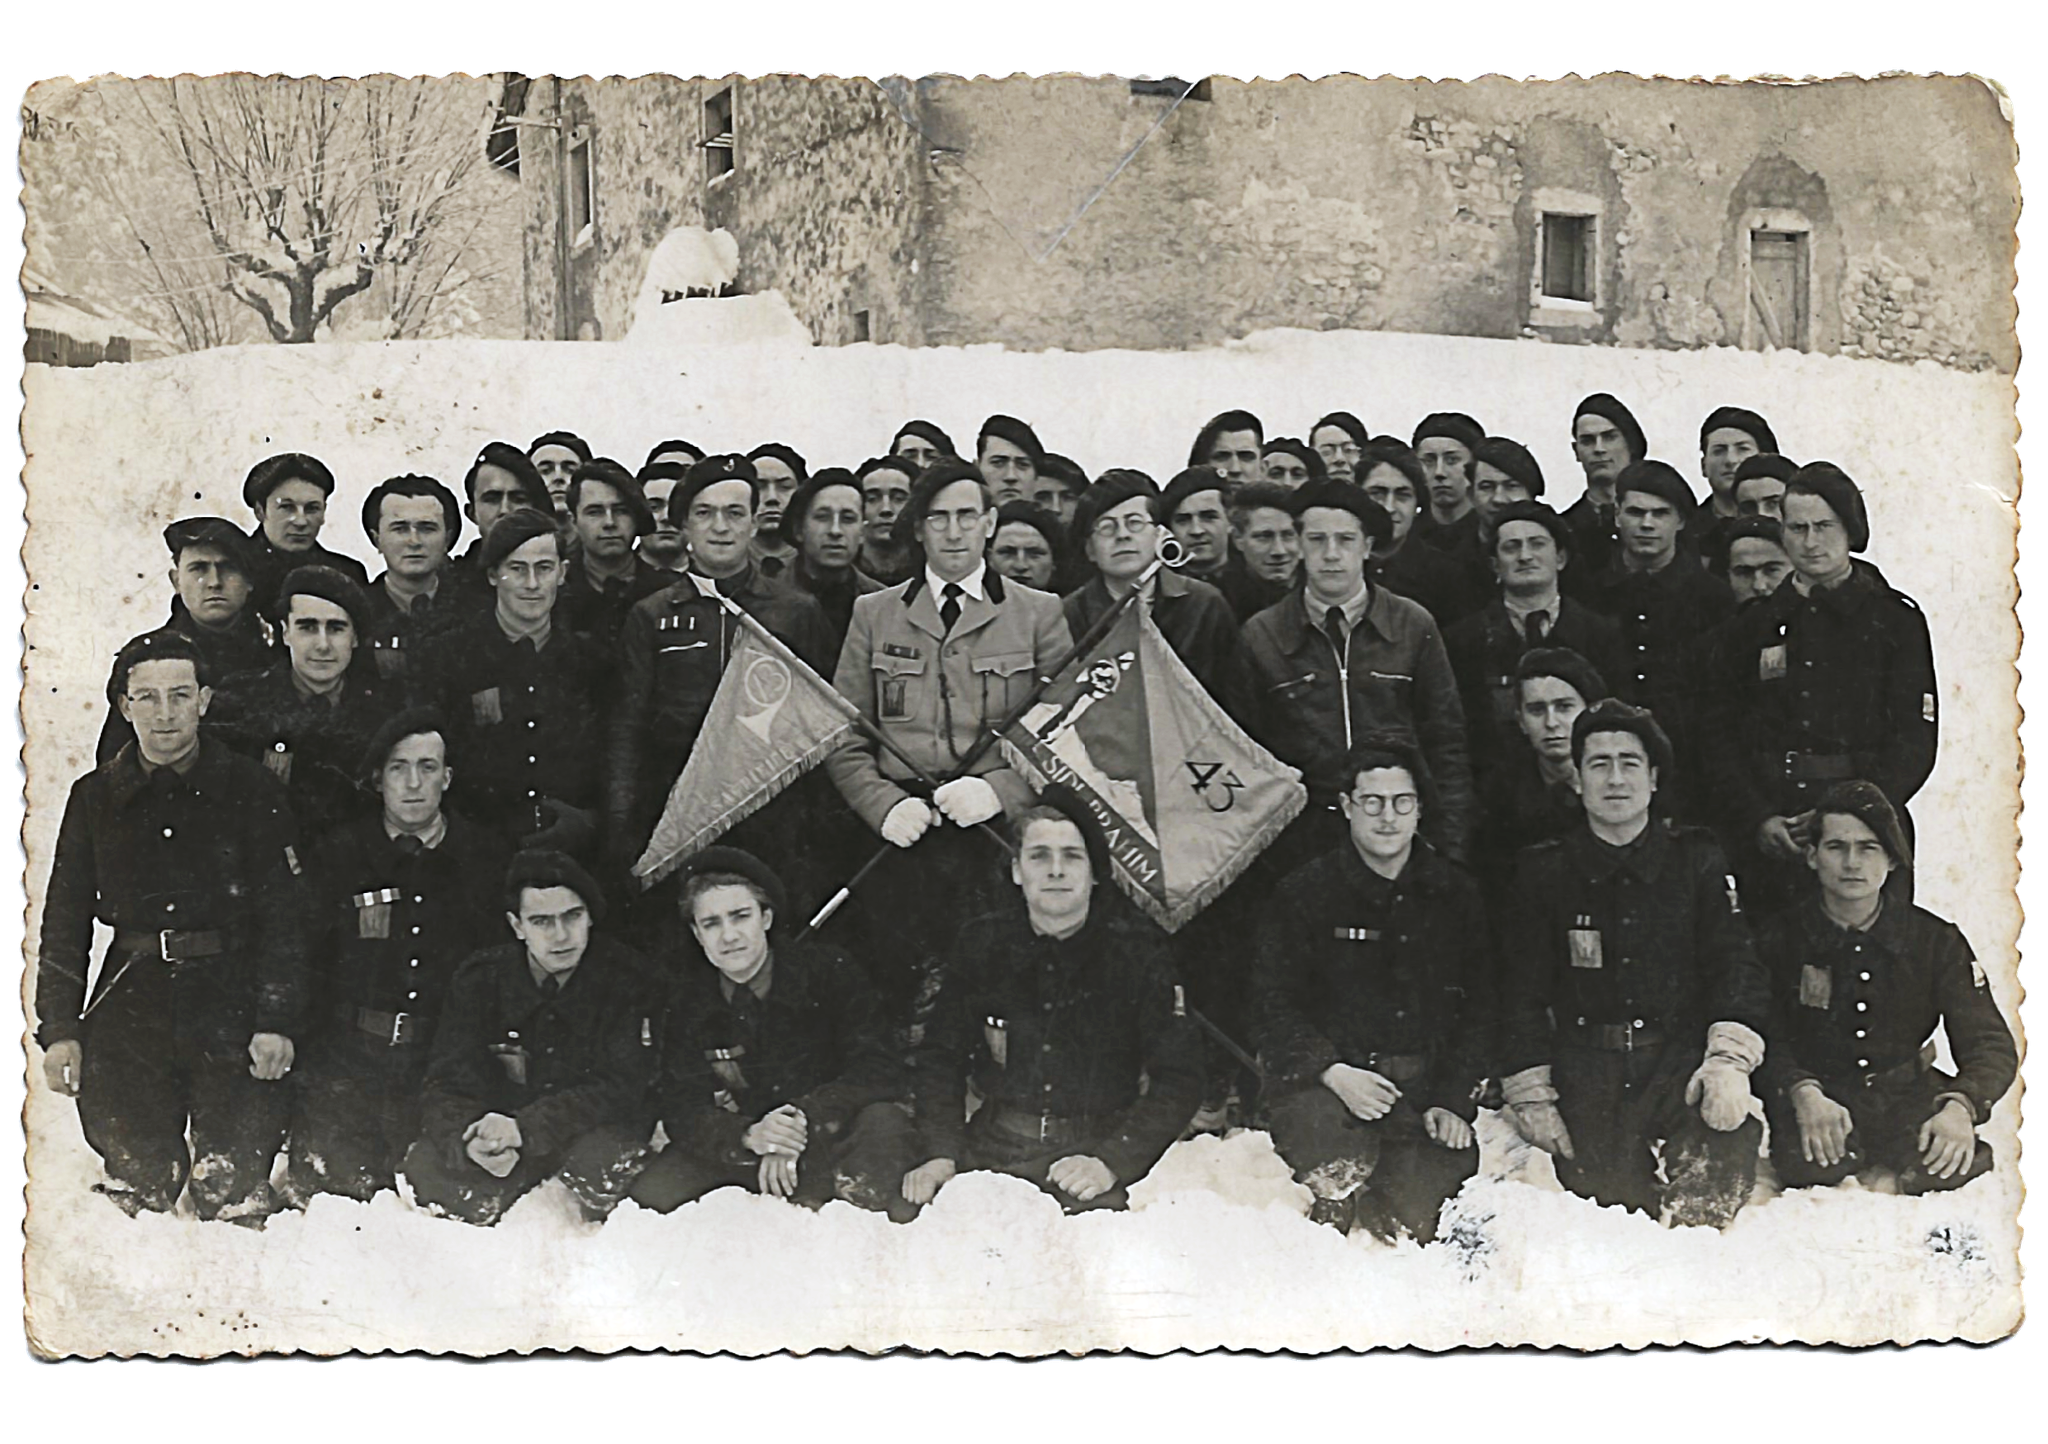 Chantier de la Bâtonnière classe 1940 - au centre le Chef Paul Flagey tenant dans ses mains le fanion du groupement Sidi-Brahim et celui de la Bâtonnière avec le cor emblématique